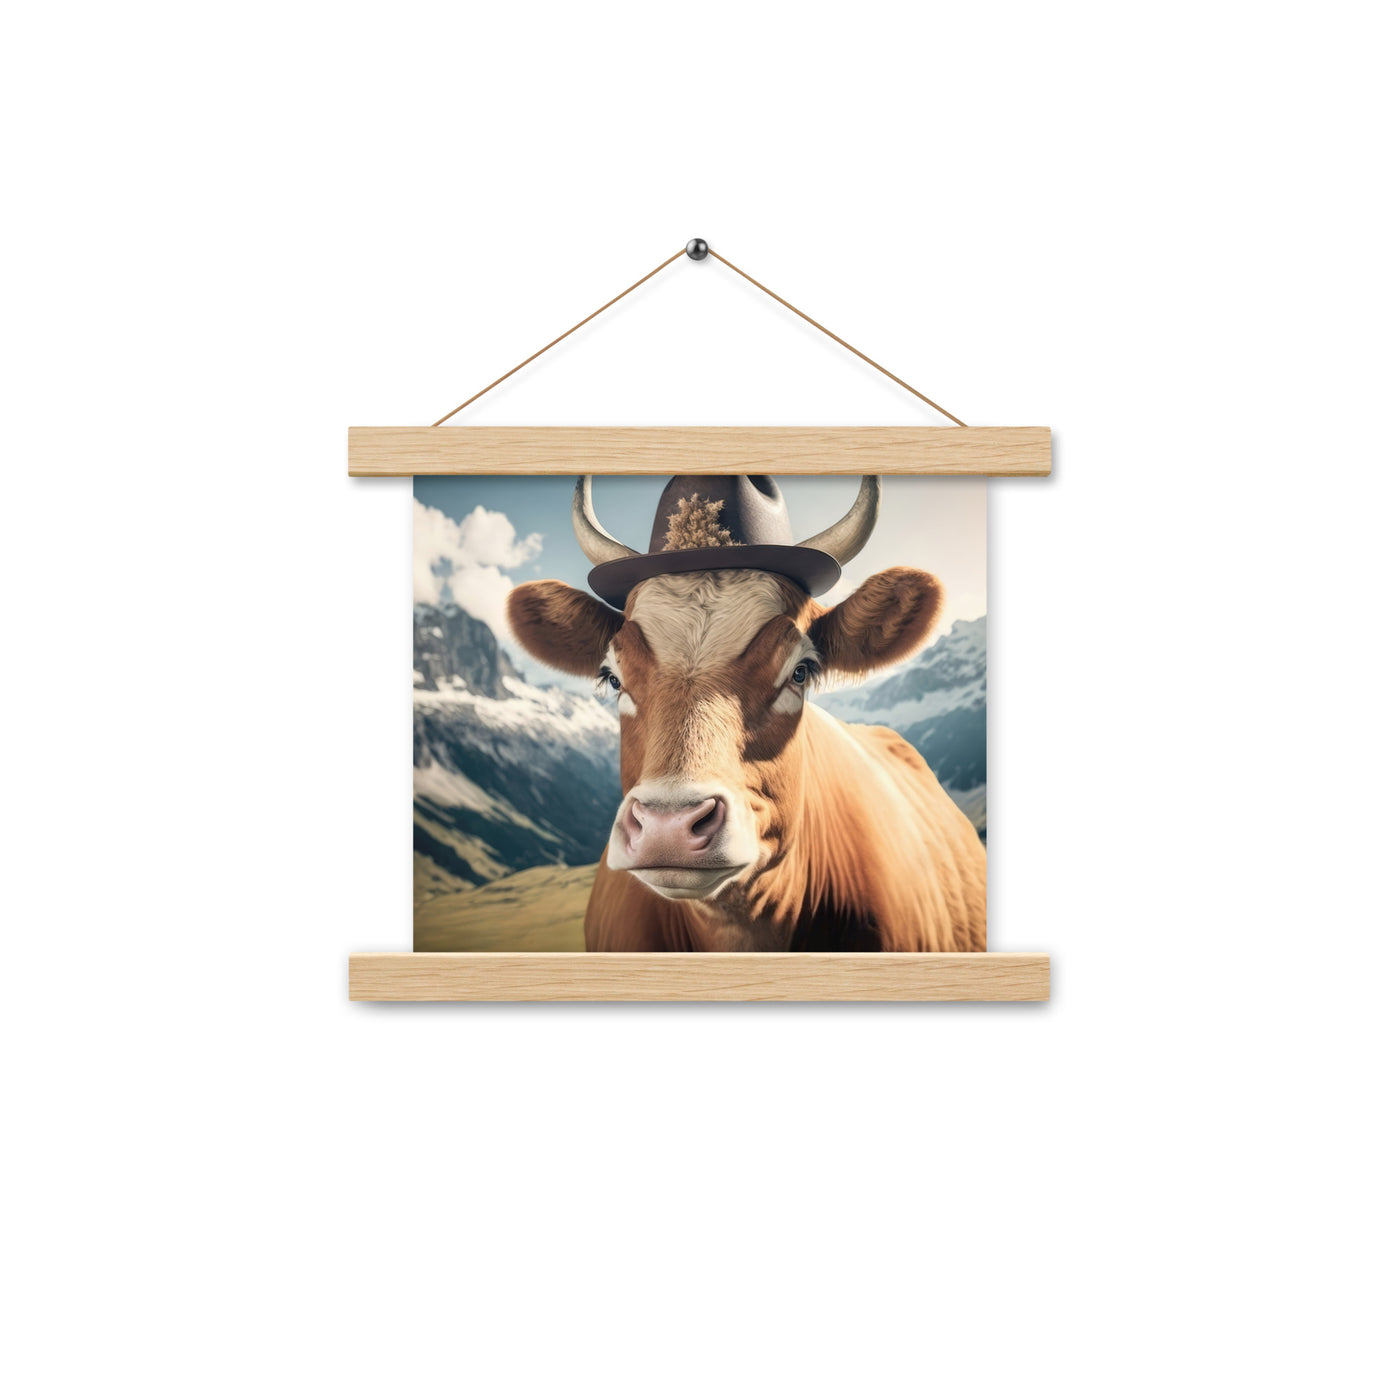 Kuh mit Hut in den Alpen - Berge im Hintergrund - Landschaftsmalerei - Premium Poster mit Aufhängung berge xxx Oak 25.4 x 25.4 cm